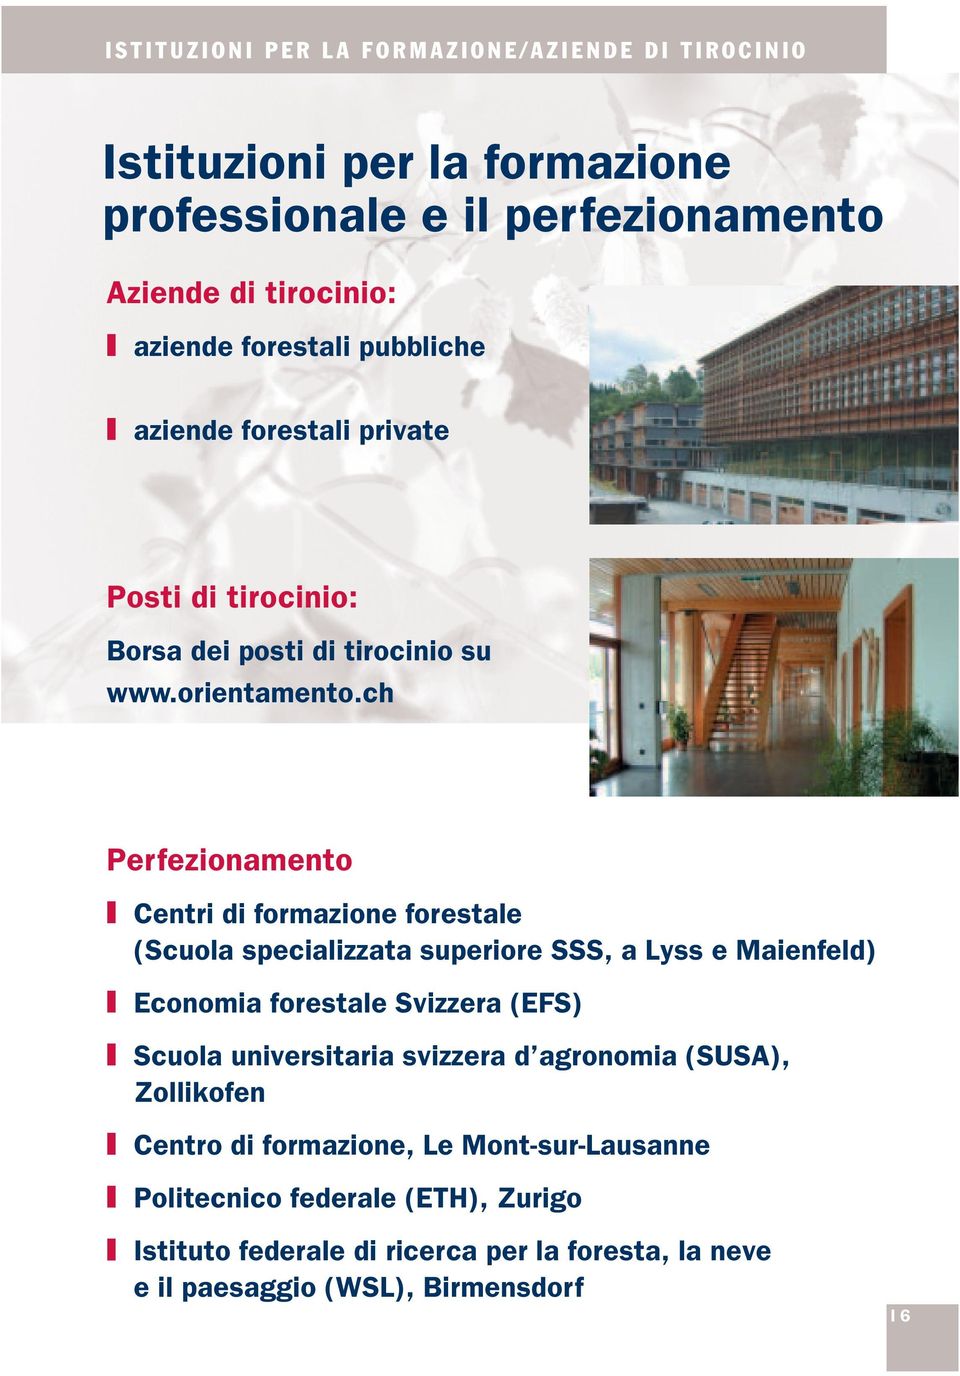 ch Perfezionamento Centri di formazione forestale (Scuola specializzata superiore SSS, a Lyss e Maienfeld) Economia forestale Svizzera (EFS) Scuola